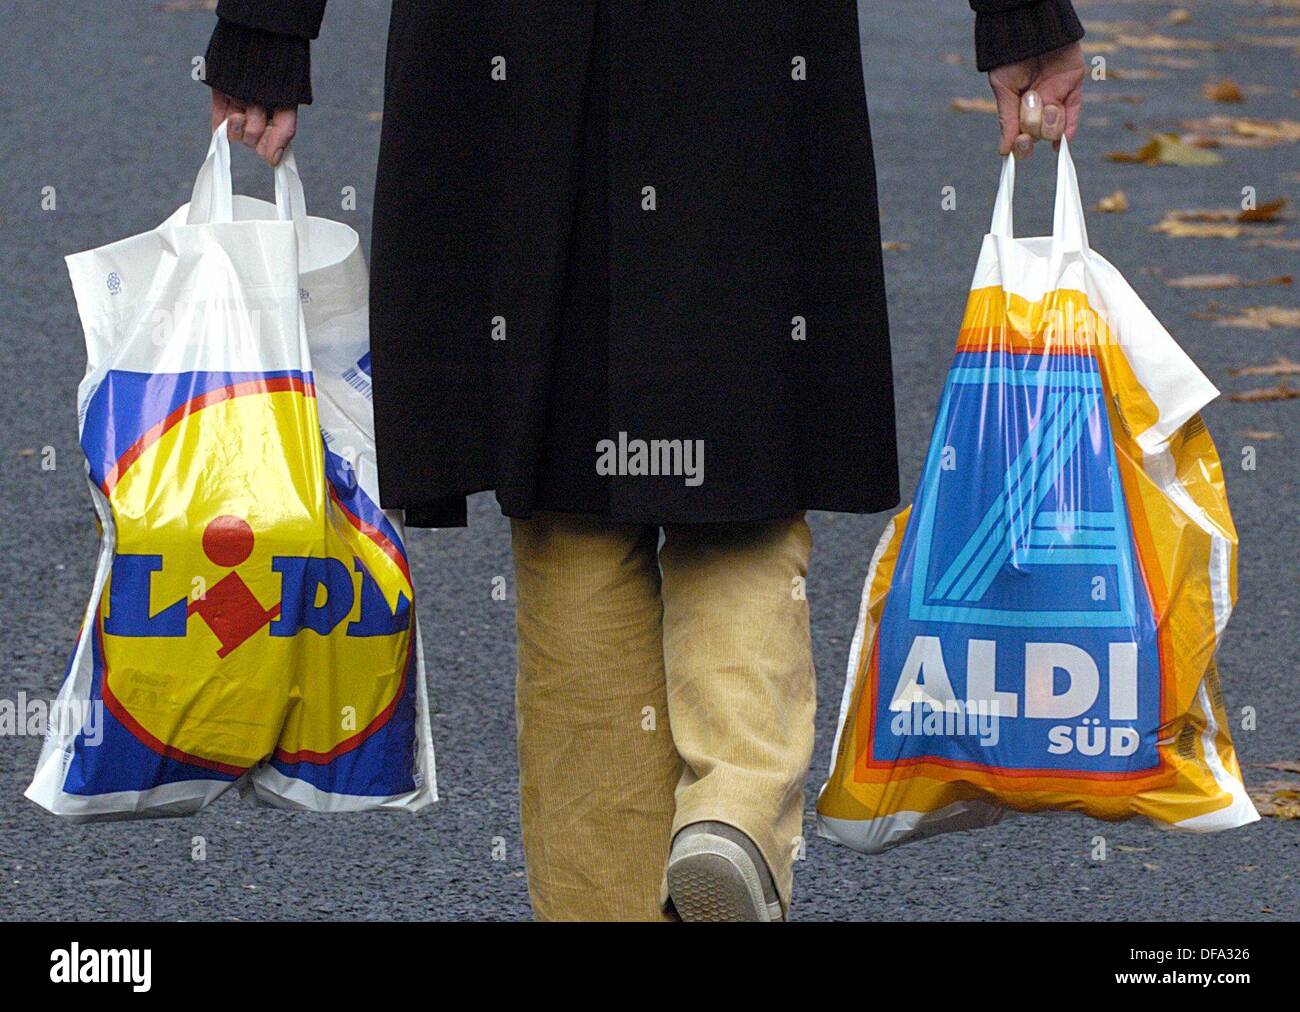 Une femme porte un sac en plastique de l'escompteur 'Lidl' et 'Aldi' à  Cologne le 17 novembre 2003. Allemagne deuxième discounter Lidl n'est plus  l'ombre de l'industrie numéro un du Aldi Photo